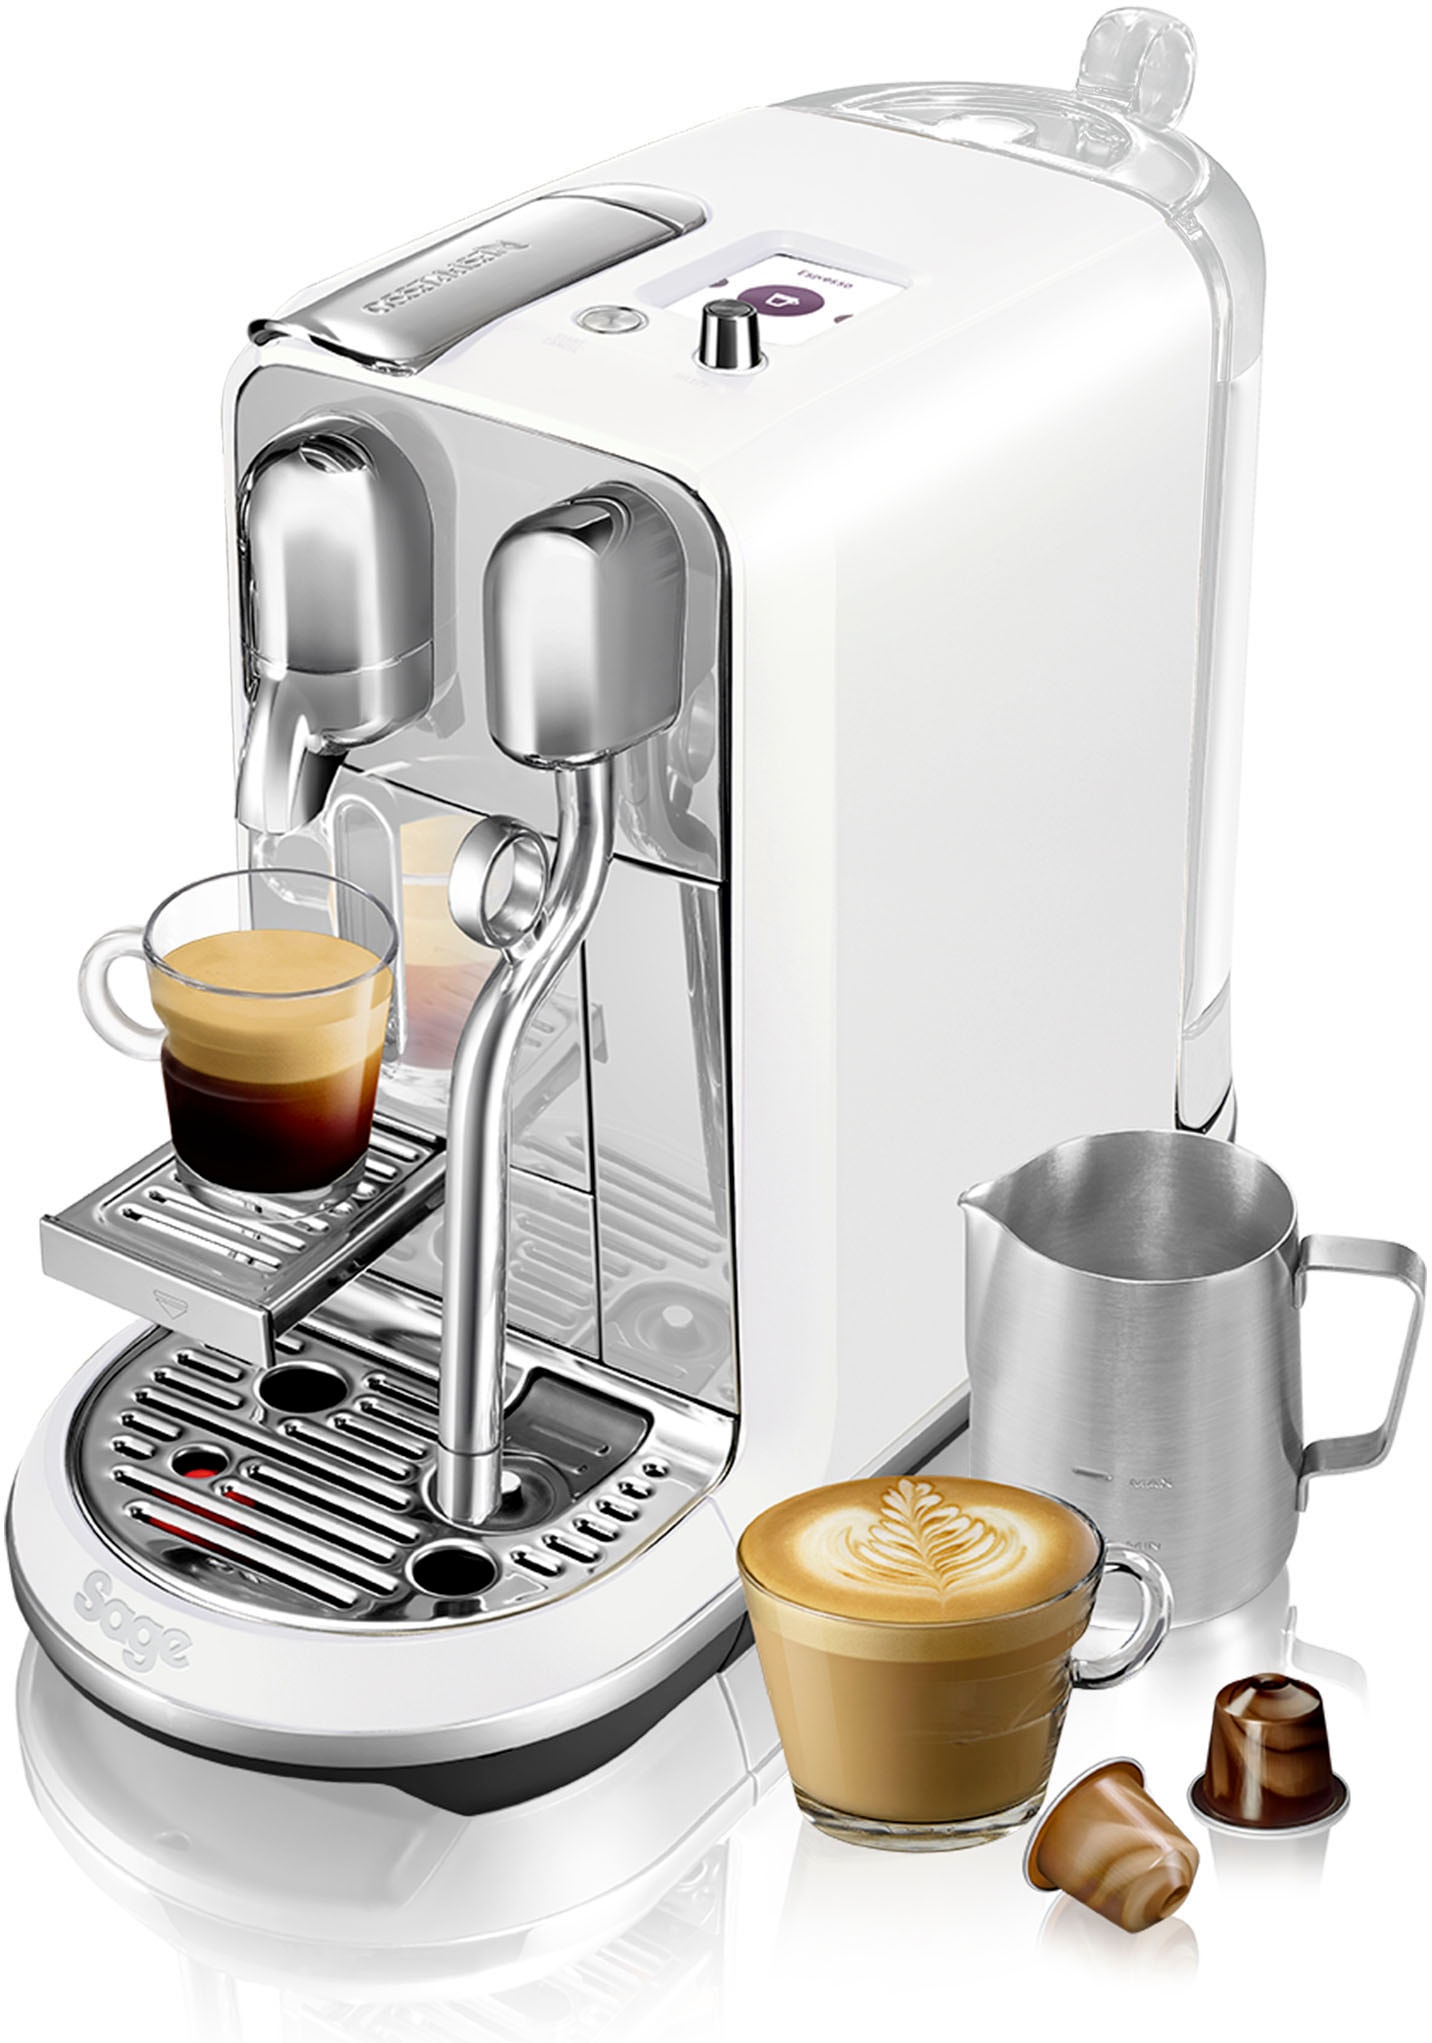 Nespresso Kaffeemaschinen jetzt auf bestellen günstig Teilzahlung